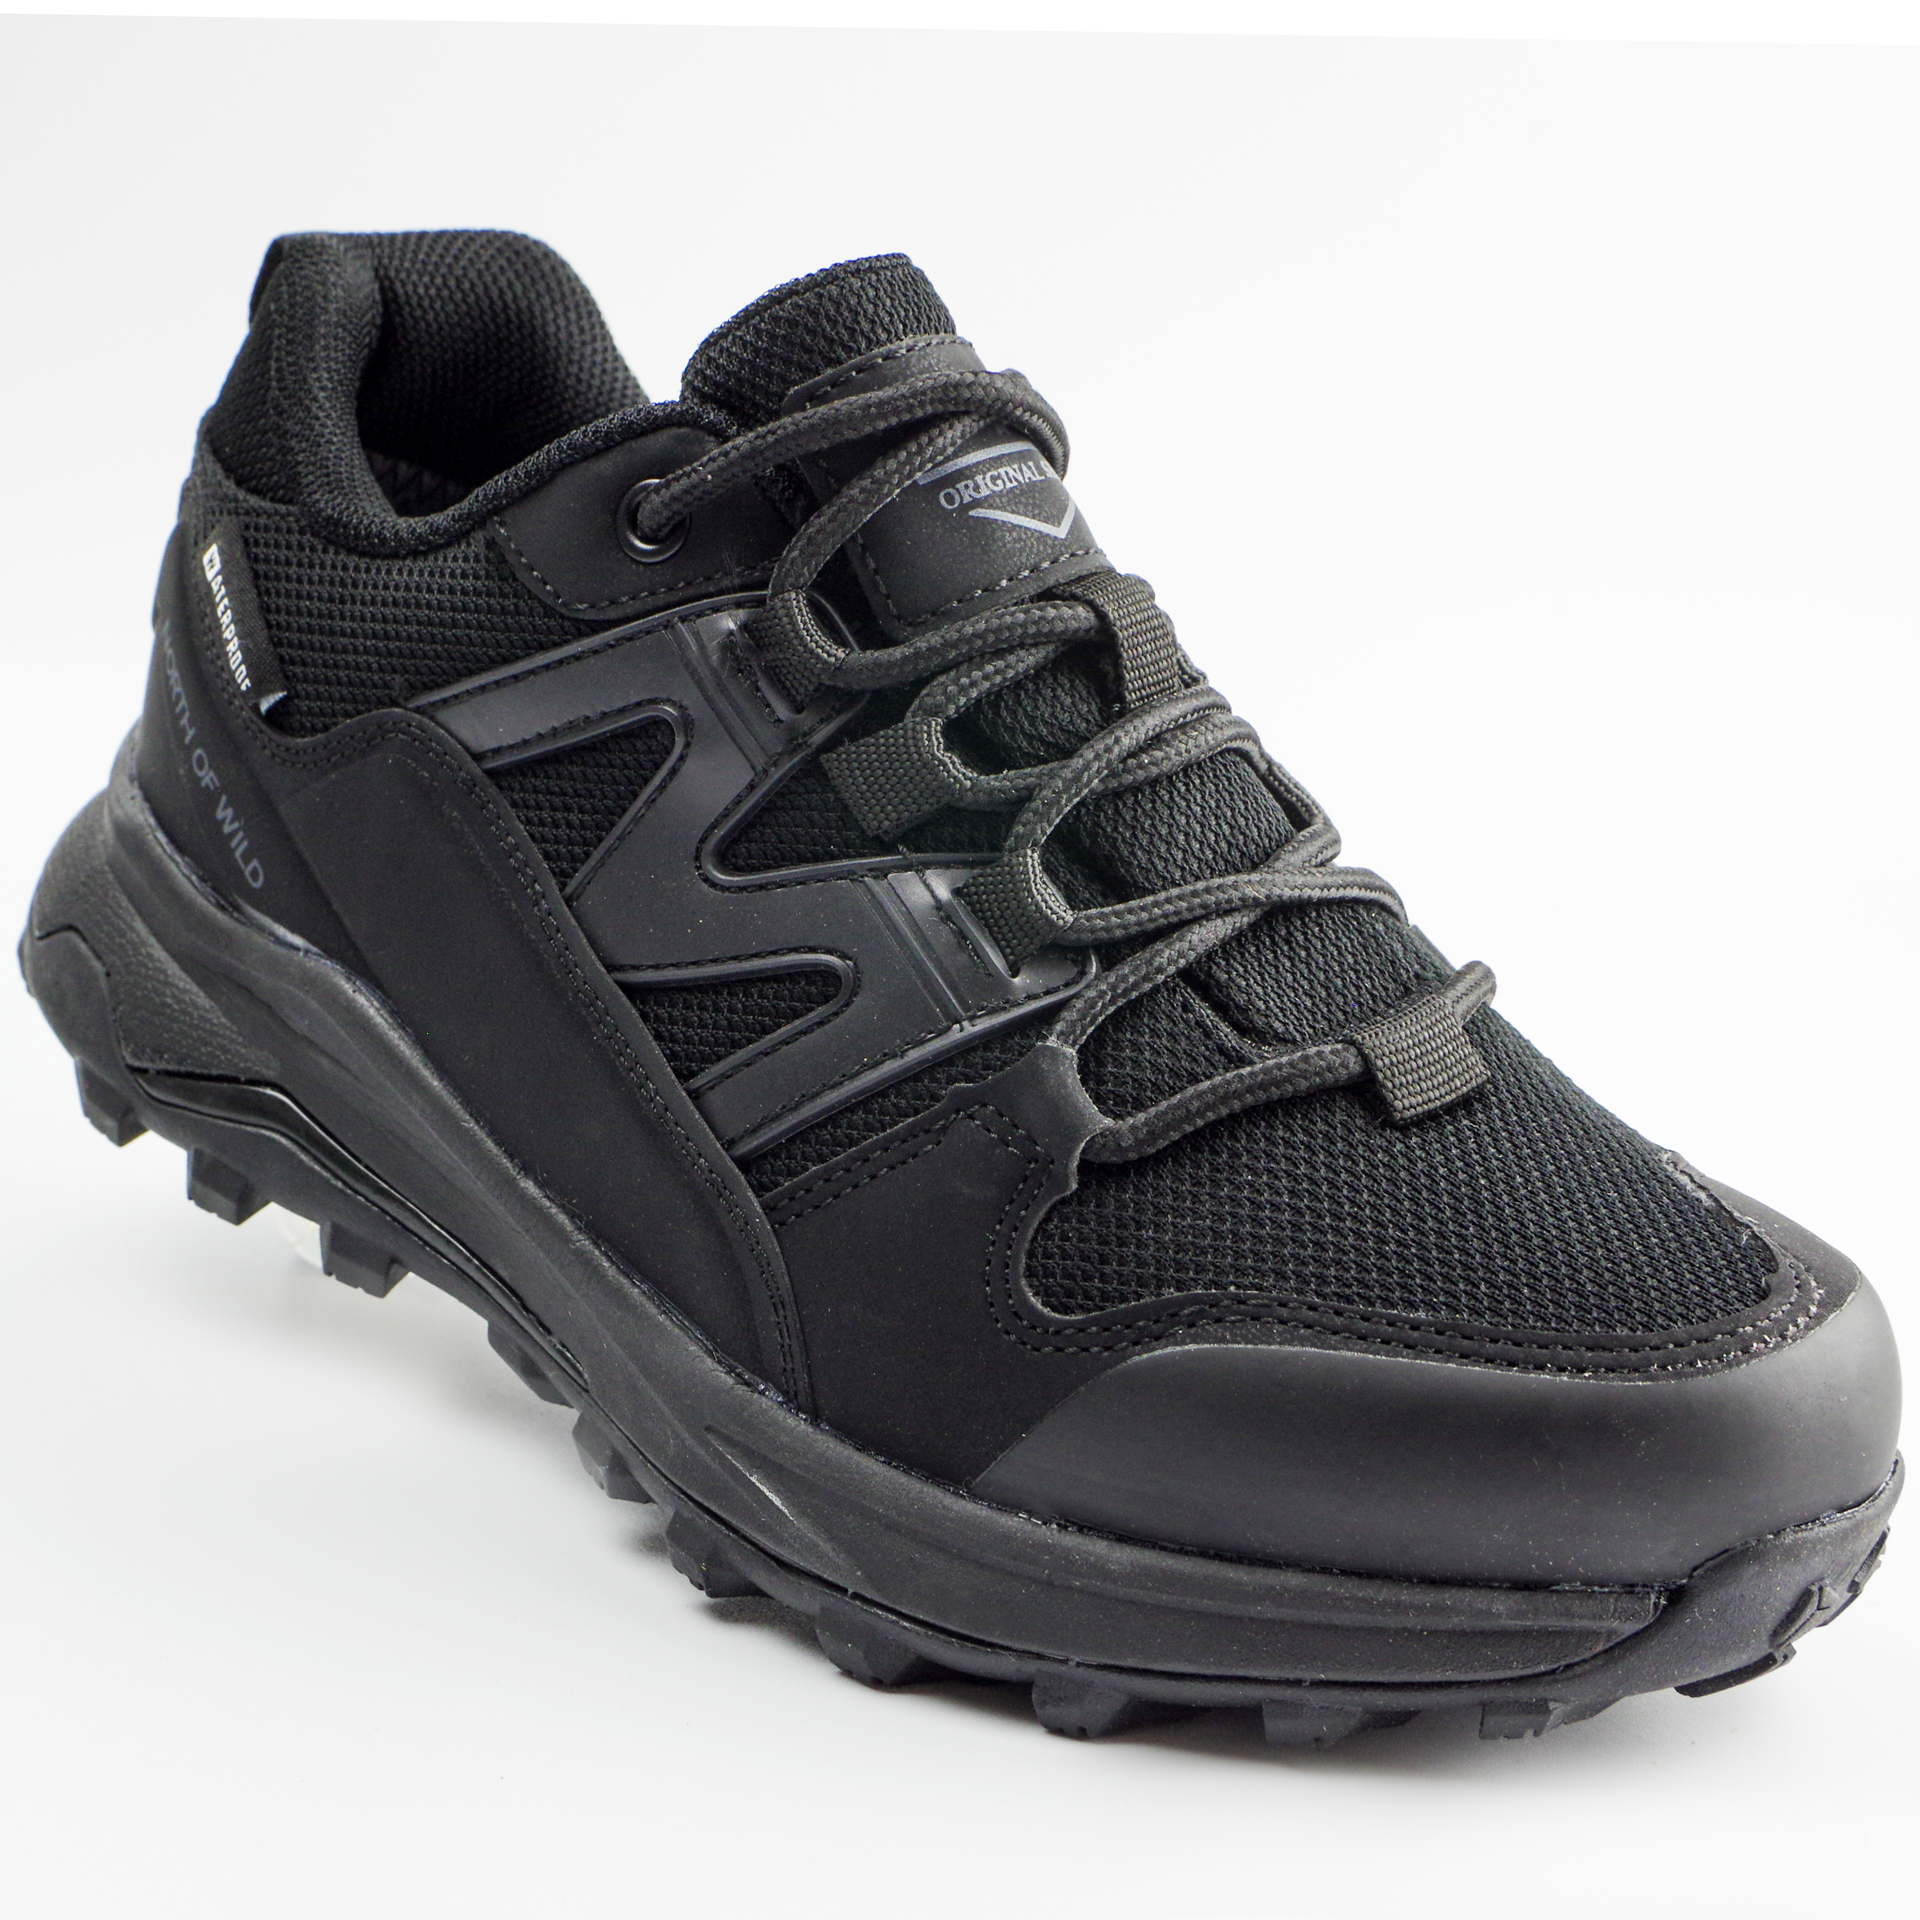 Мембранні кросівки для підлітків (2175) для хлопчика, матеріал Мембрана, Чорний колір, 36-40 розміри – Sole Kids